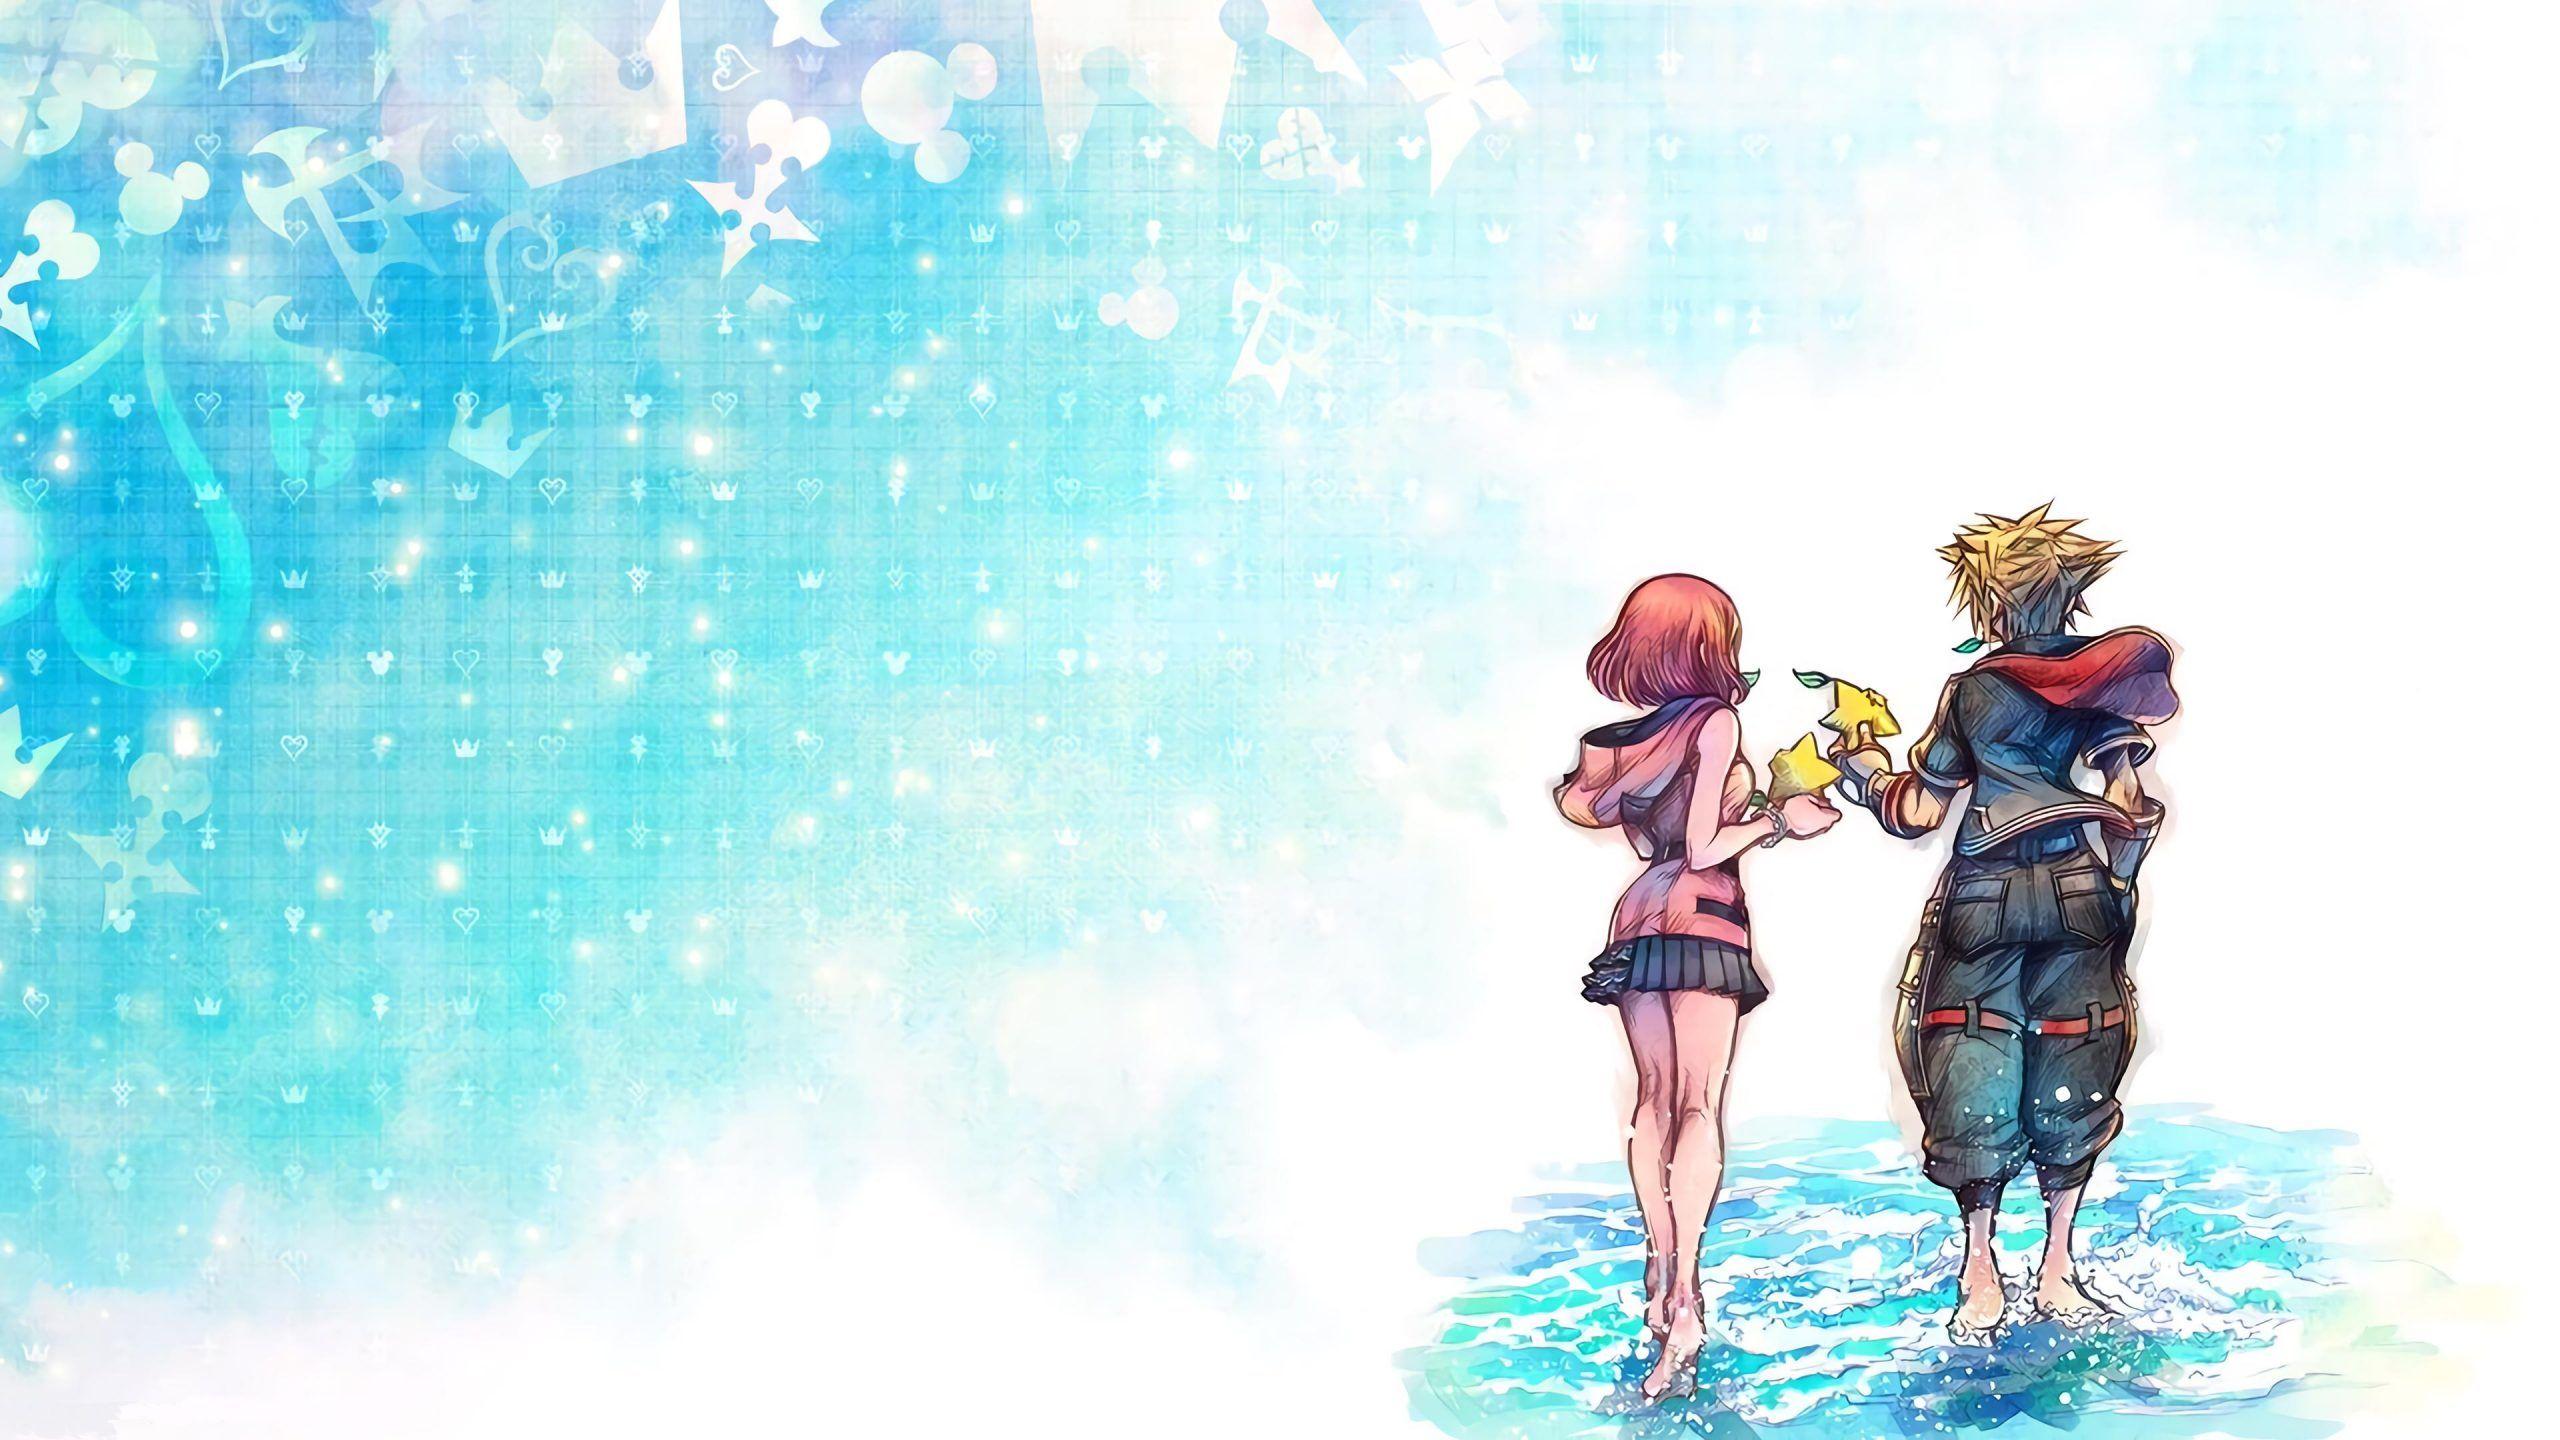 Aqua Kingdom Hearts Wallpapers Top Free Aqua Kingdom Hearts Backgrounds Wallpaperaccess 9969